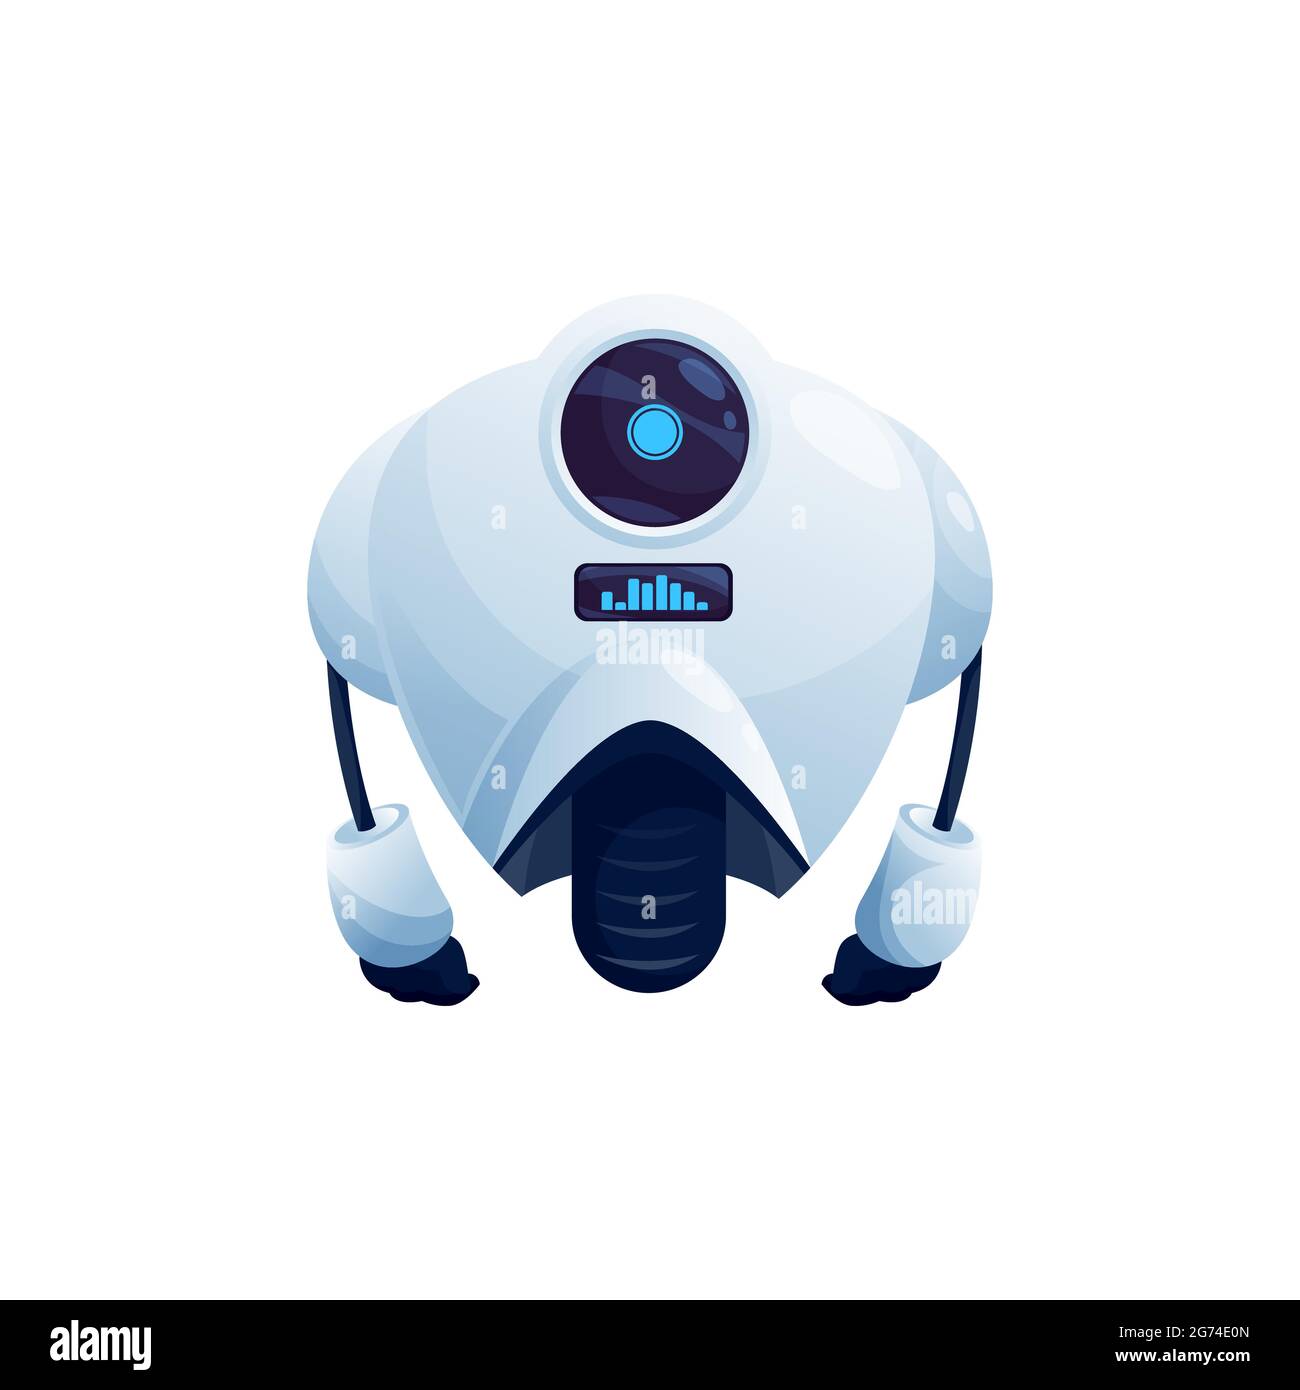 Roboter mit großer Kamera-Anzeige auf dem Kopf, auf einem Rad isoliert futuristischen Charakter. Vector elektronische Cyborg, humanoide künstliche Intelligenz Maschine. Stock Vektor